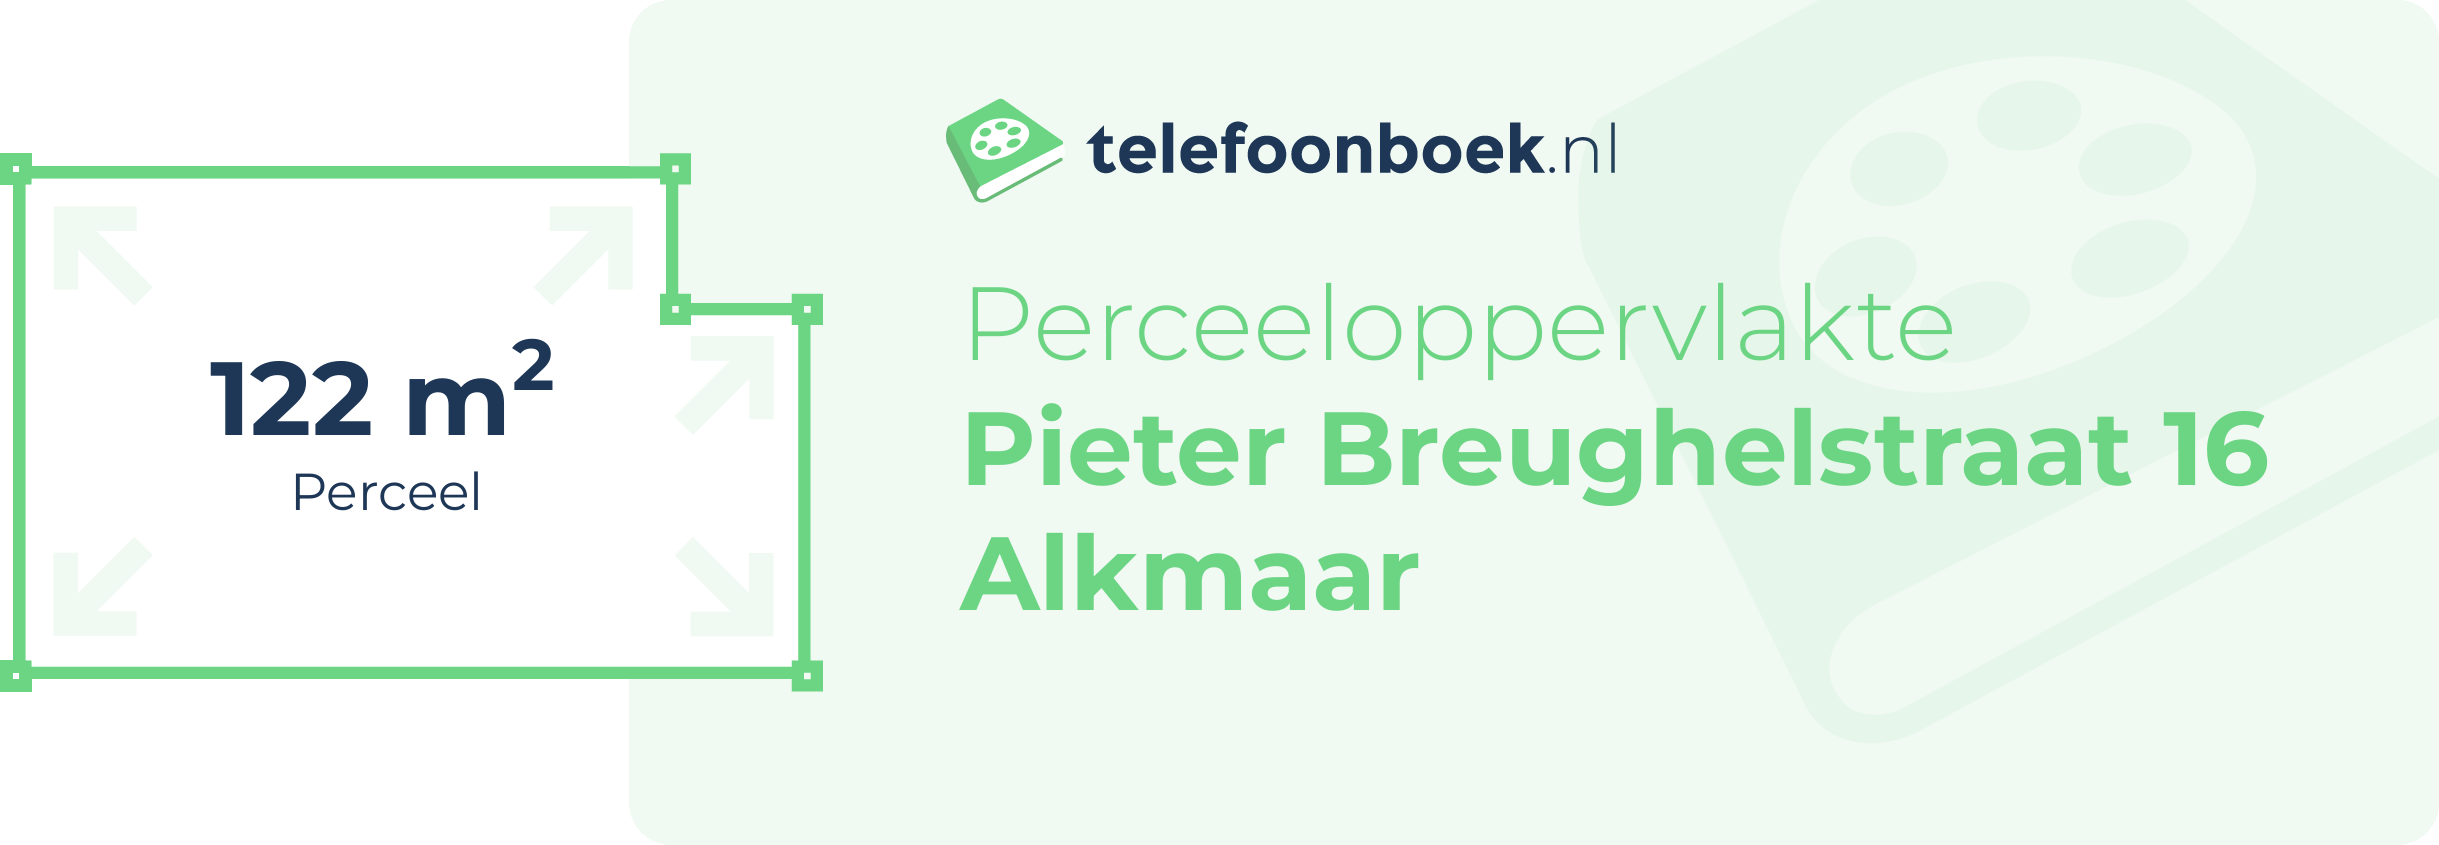 Perceeloppervlakte Pieter Breughelstraat 16 Alkmaar